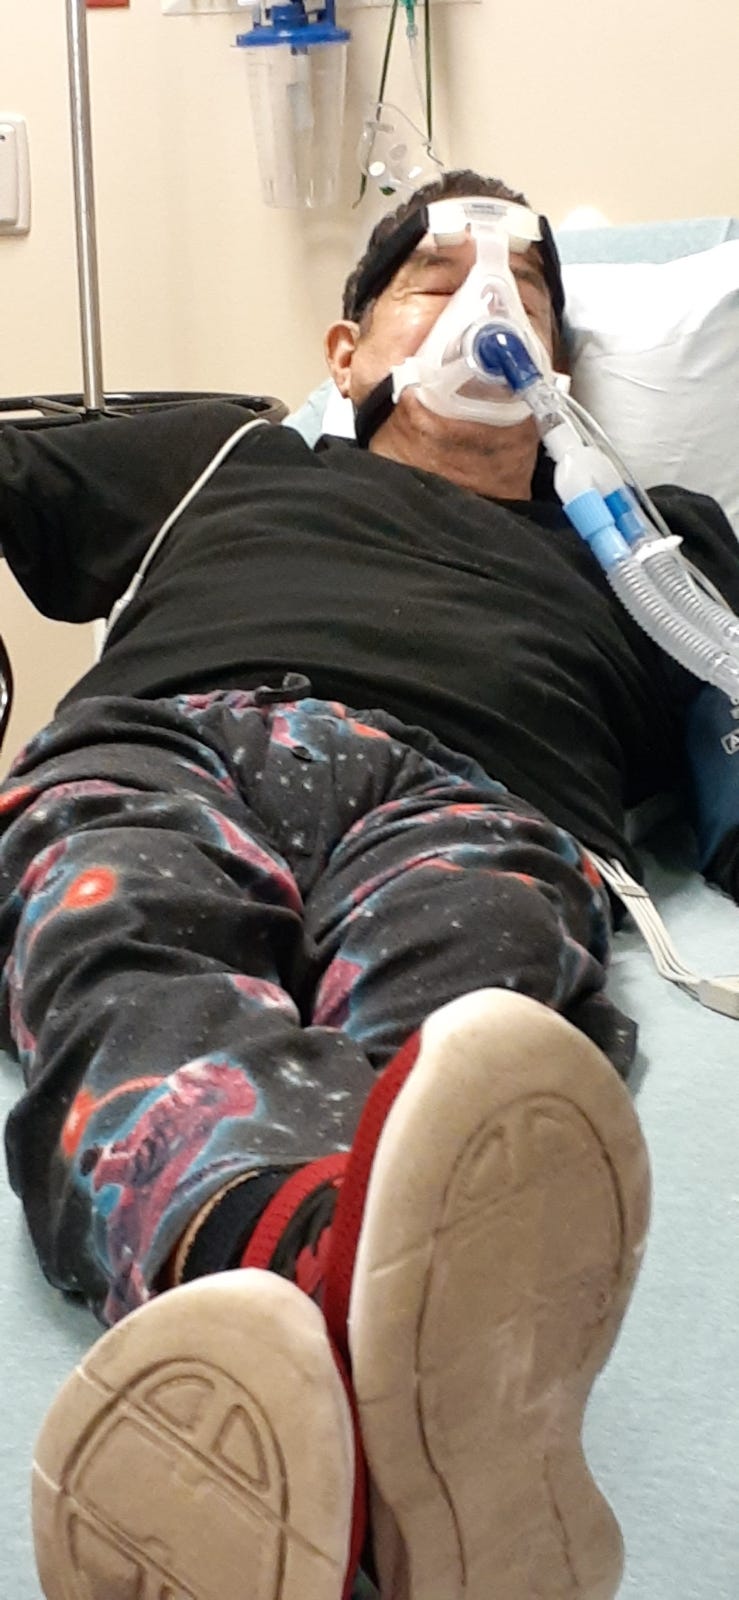 Juan Arizpe recibe tratamiento en el hospital, tras caer enfermo de COVID-19. El trabajador de 71 años murió tres días después de la enfermedad.